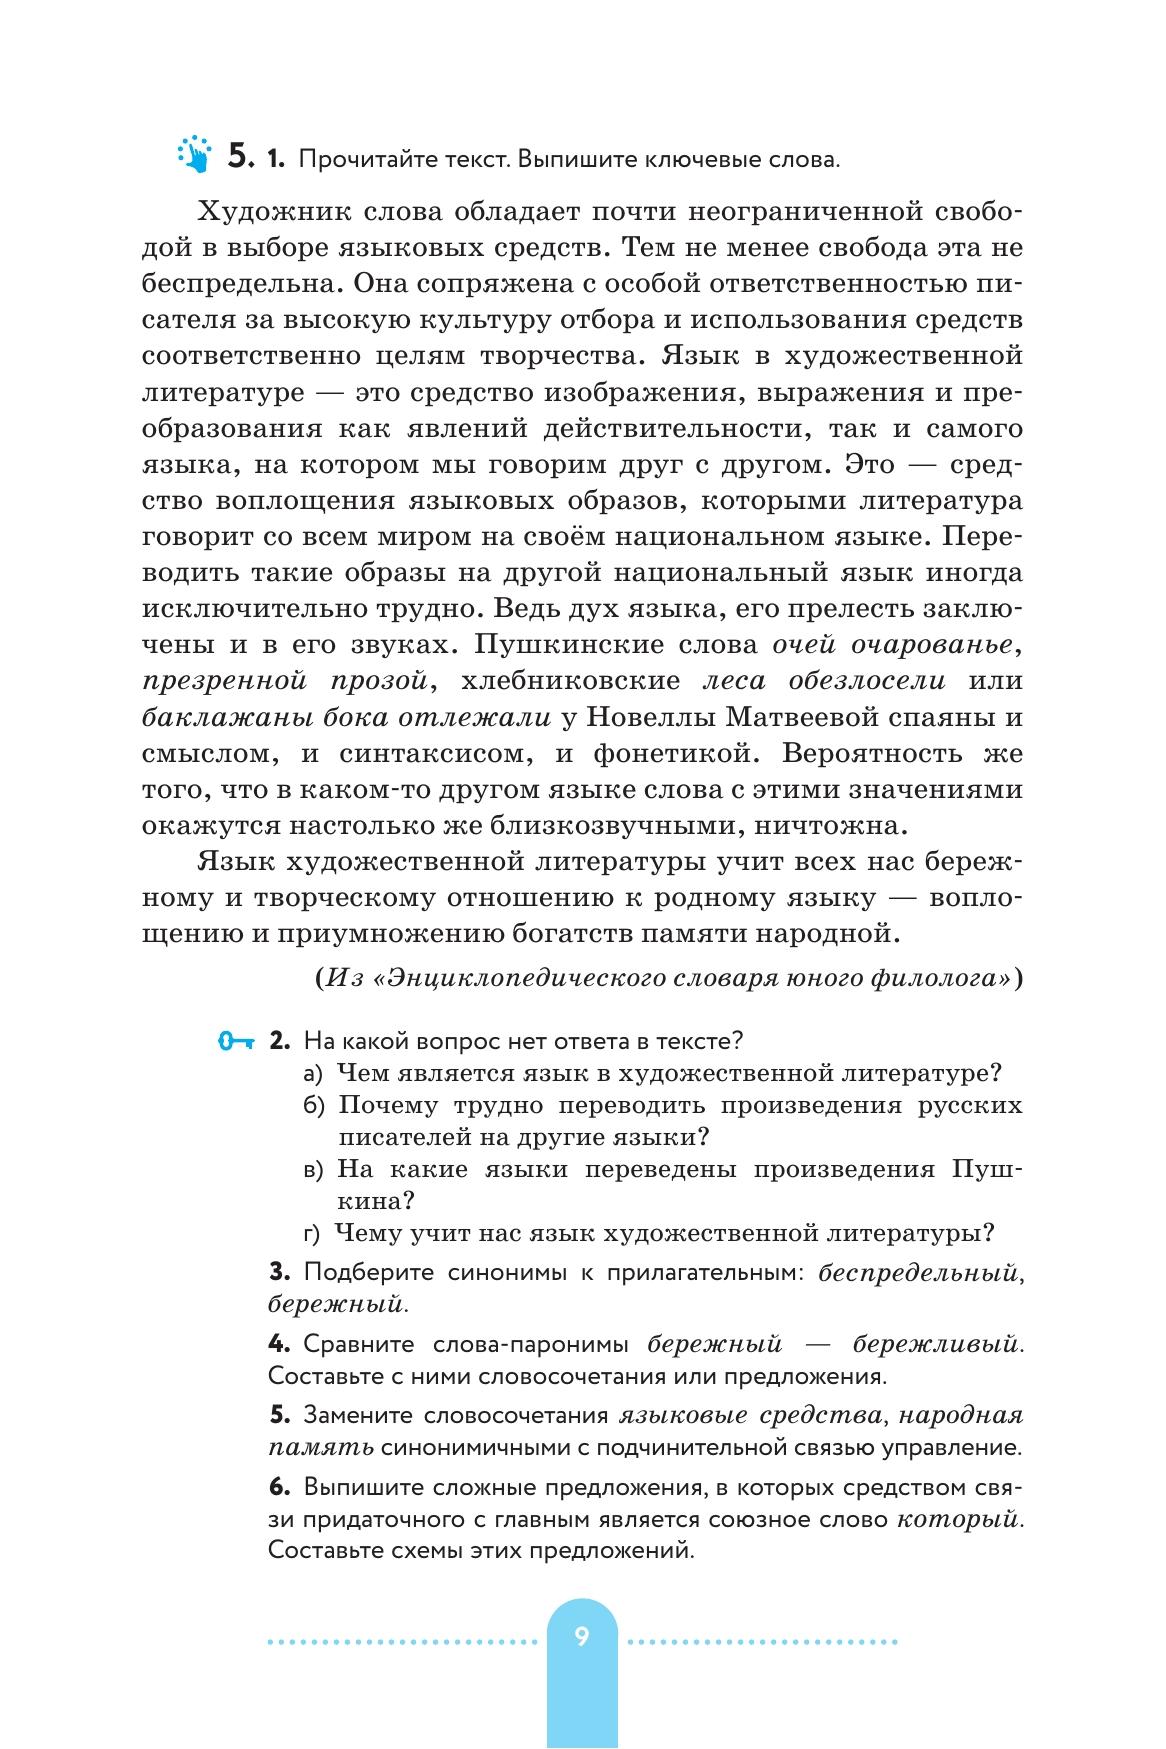 Русский язык. 9 класс. Практика. Учебник 3